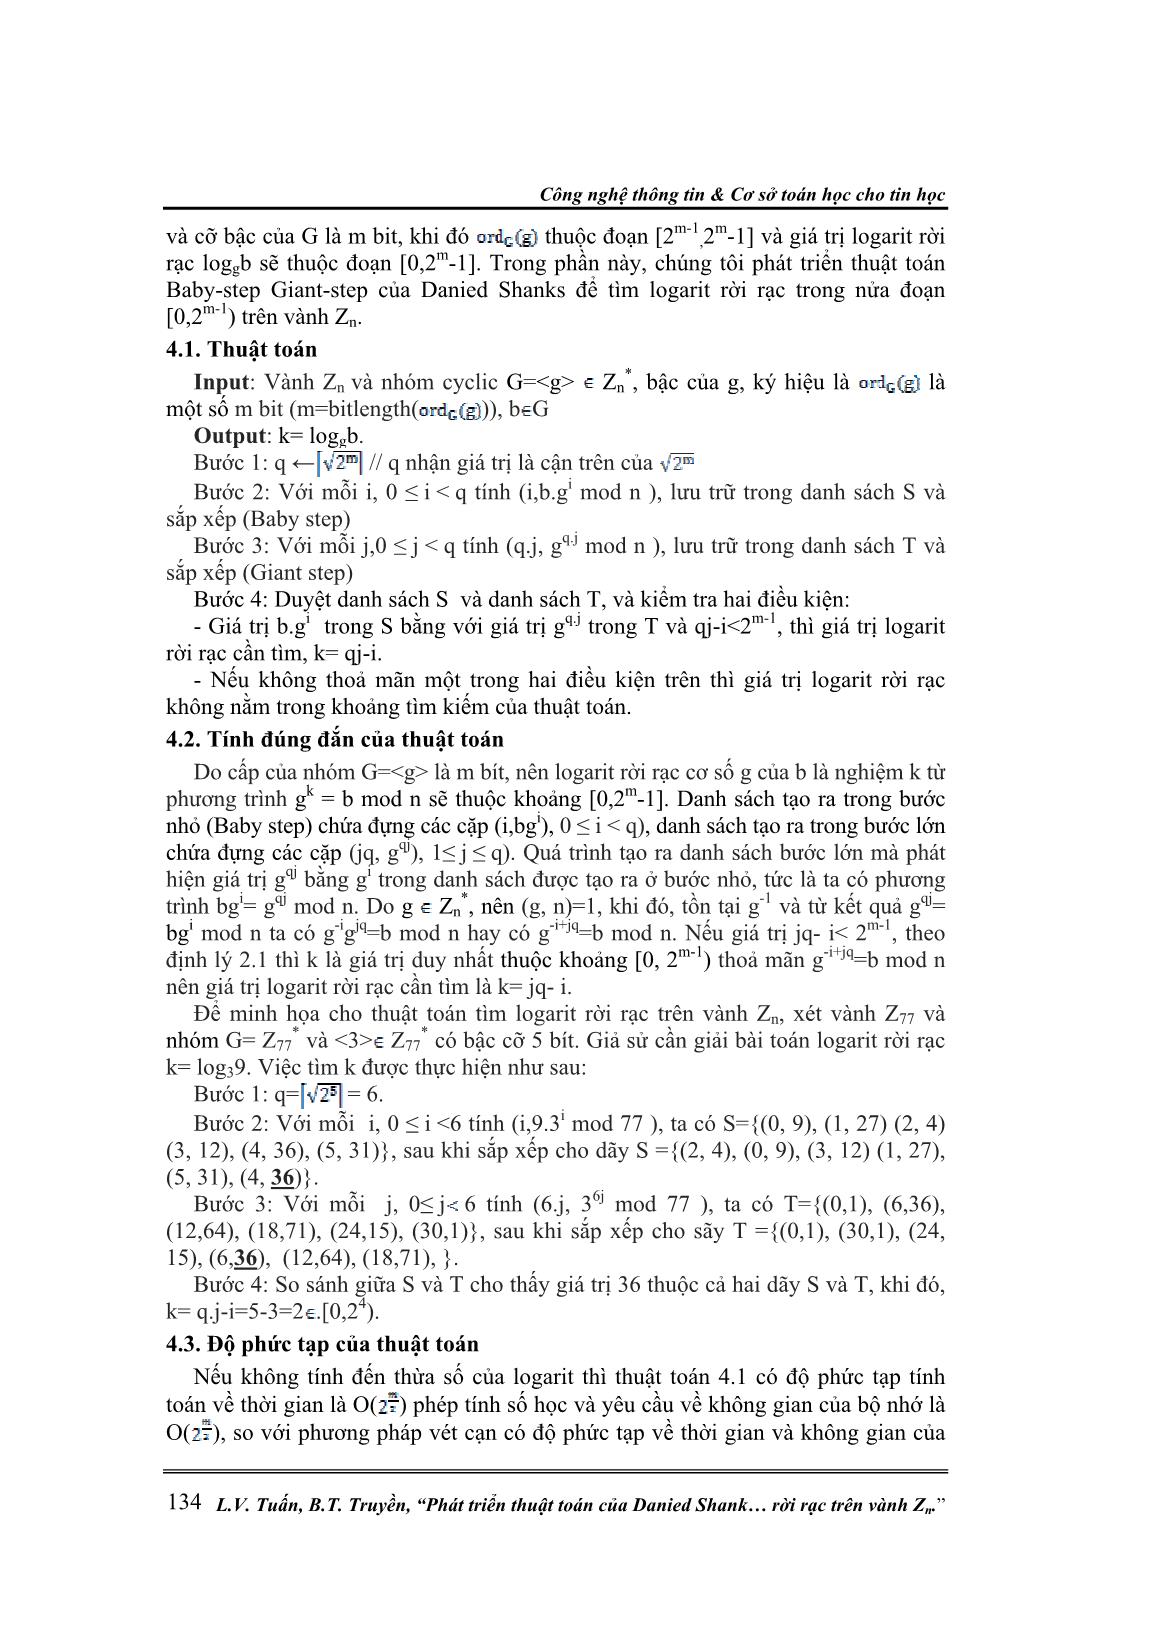 Phát triển thuật toán của Danied Shank để giải bài toán Logarit rời rạc trên vành Zn trang 6